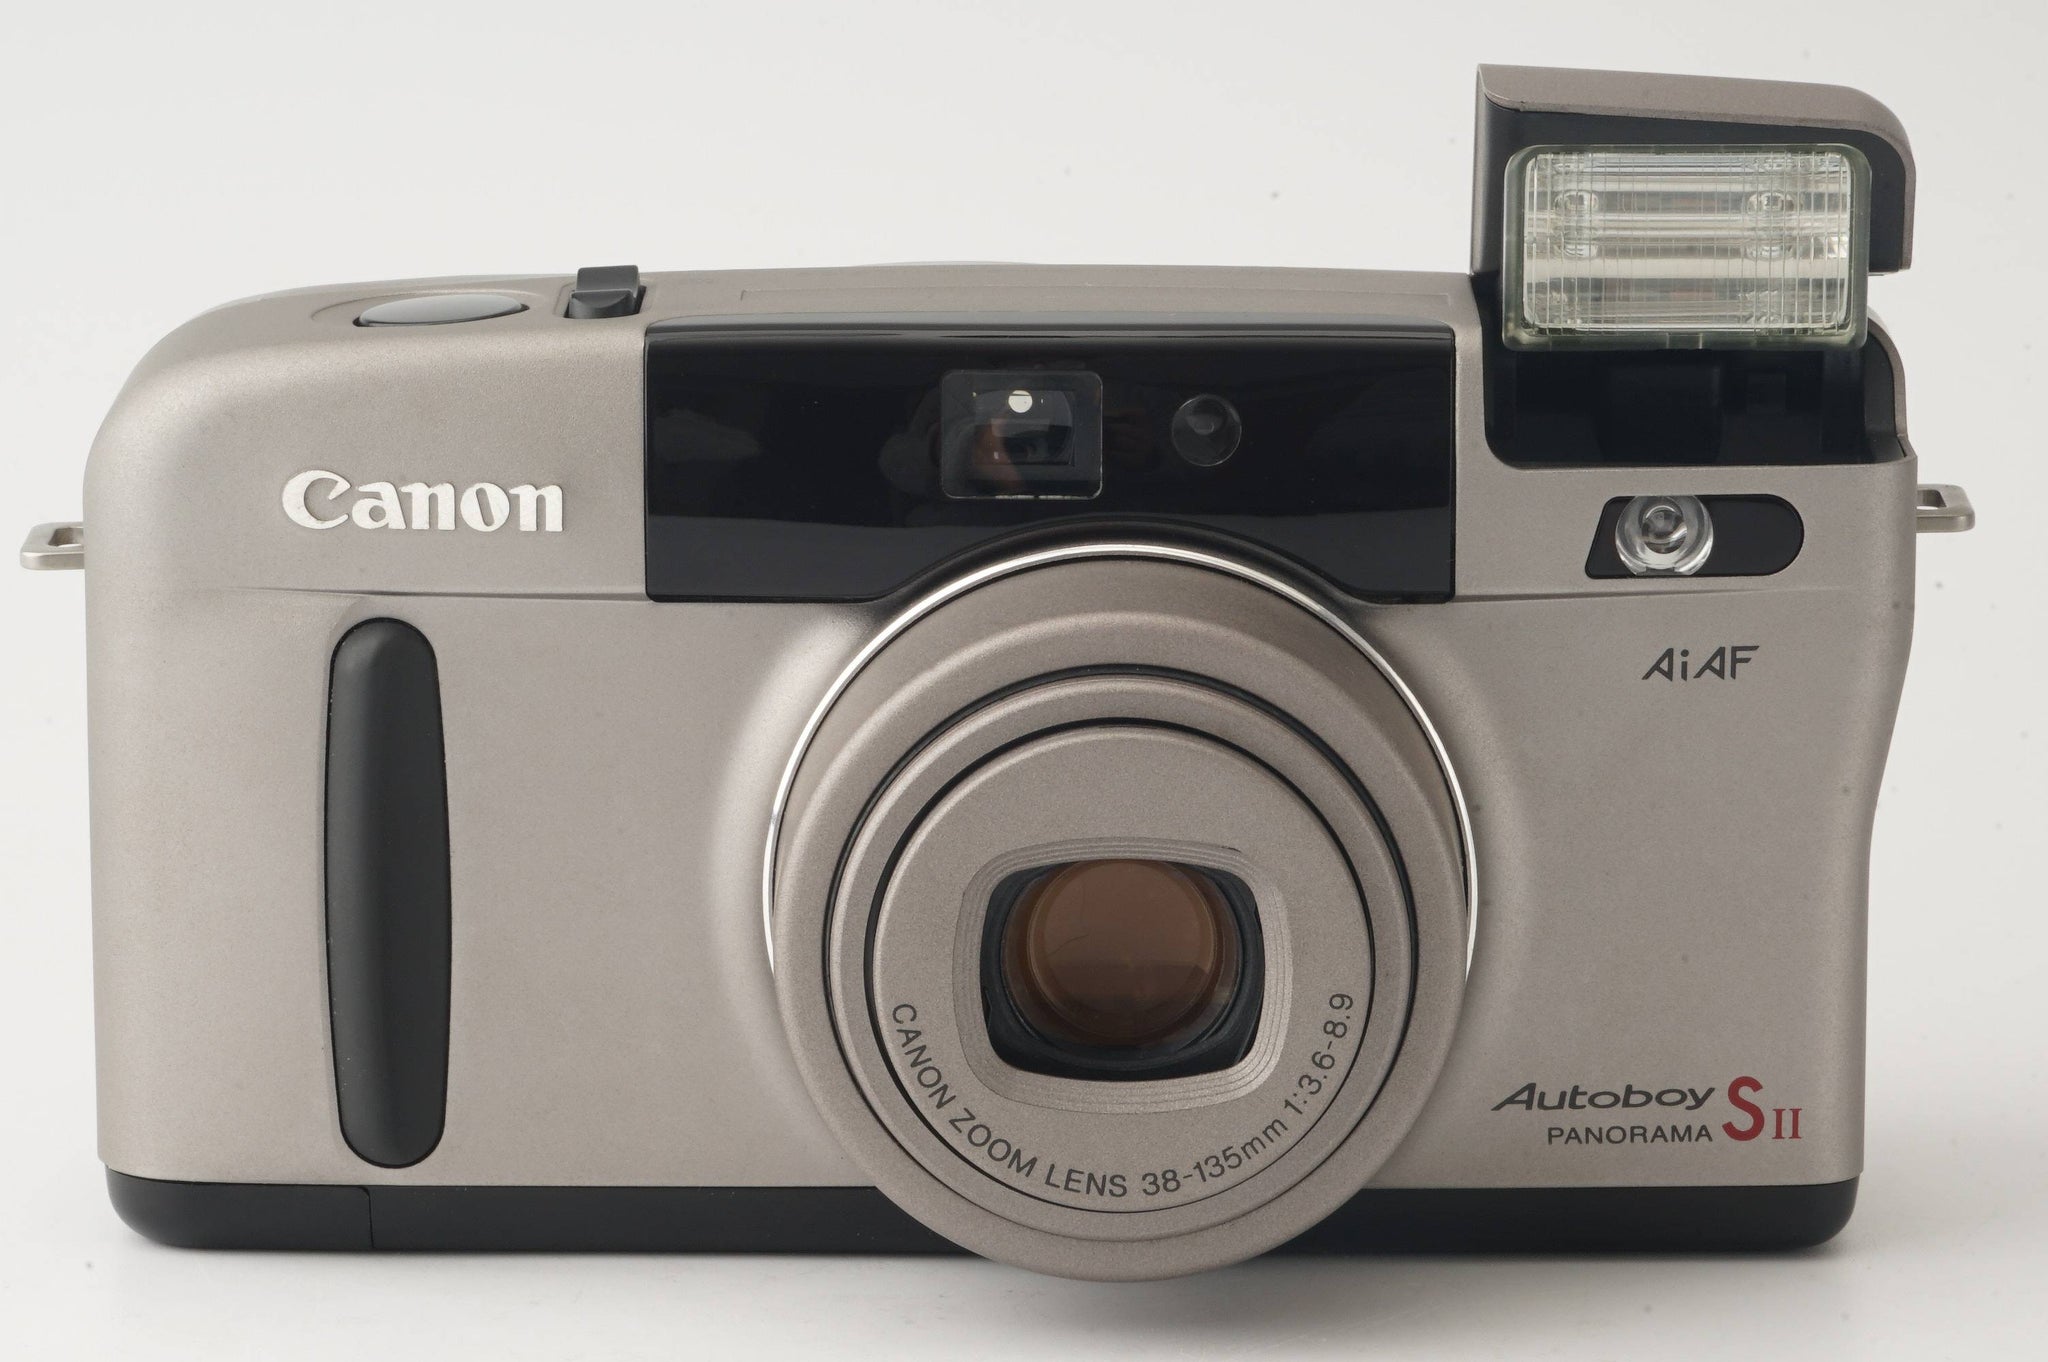 キヤノン Canon Autoboy S II PANORAMA / ZOOM 38-135mm F3.6-8.9